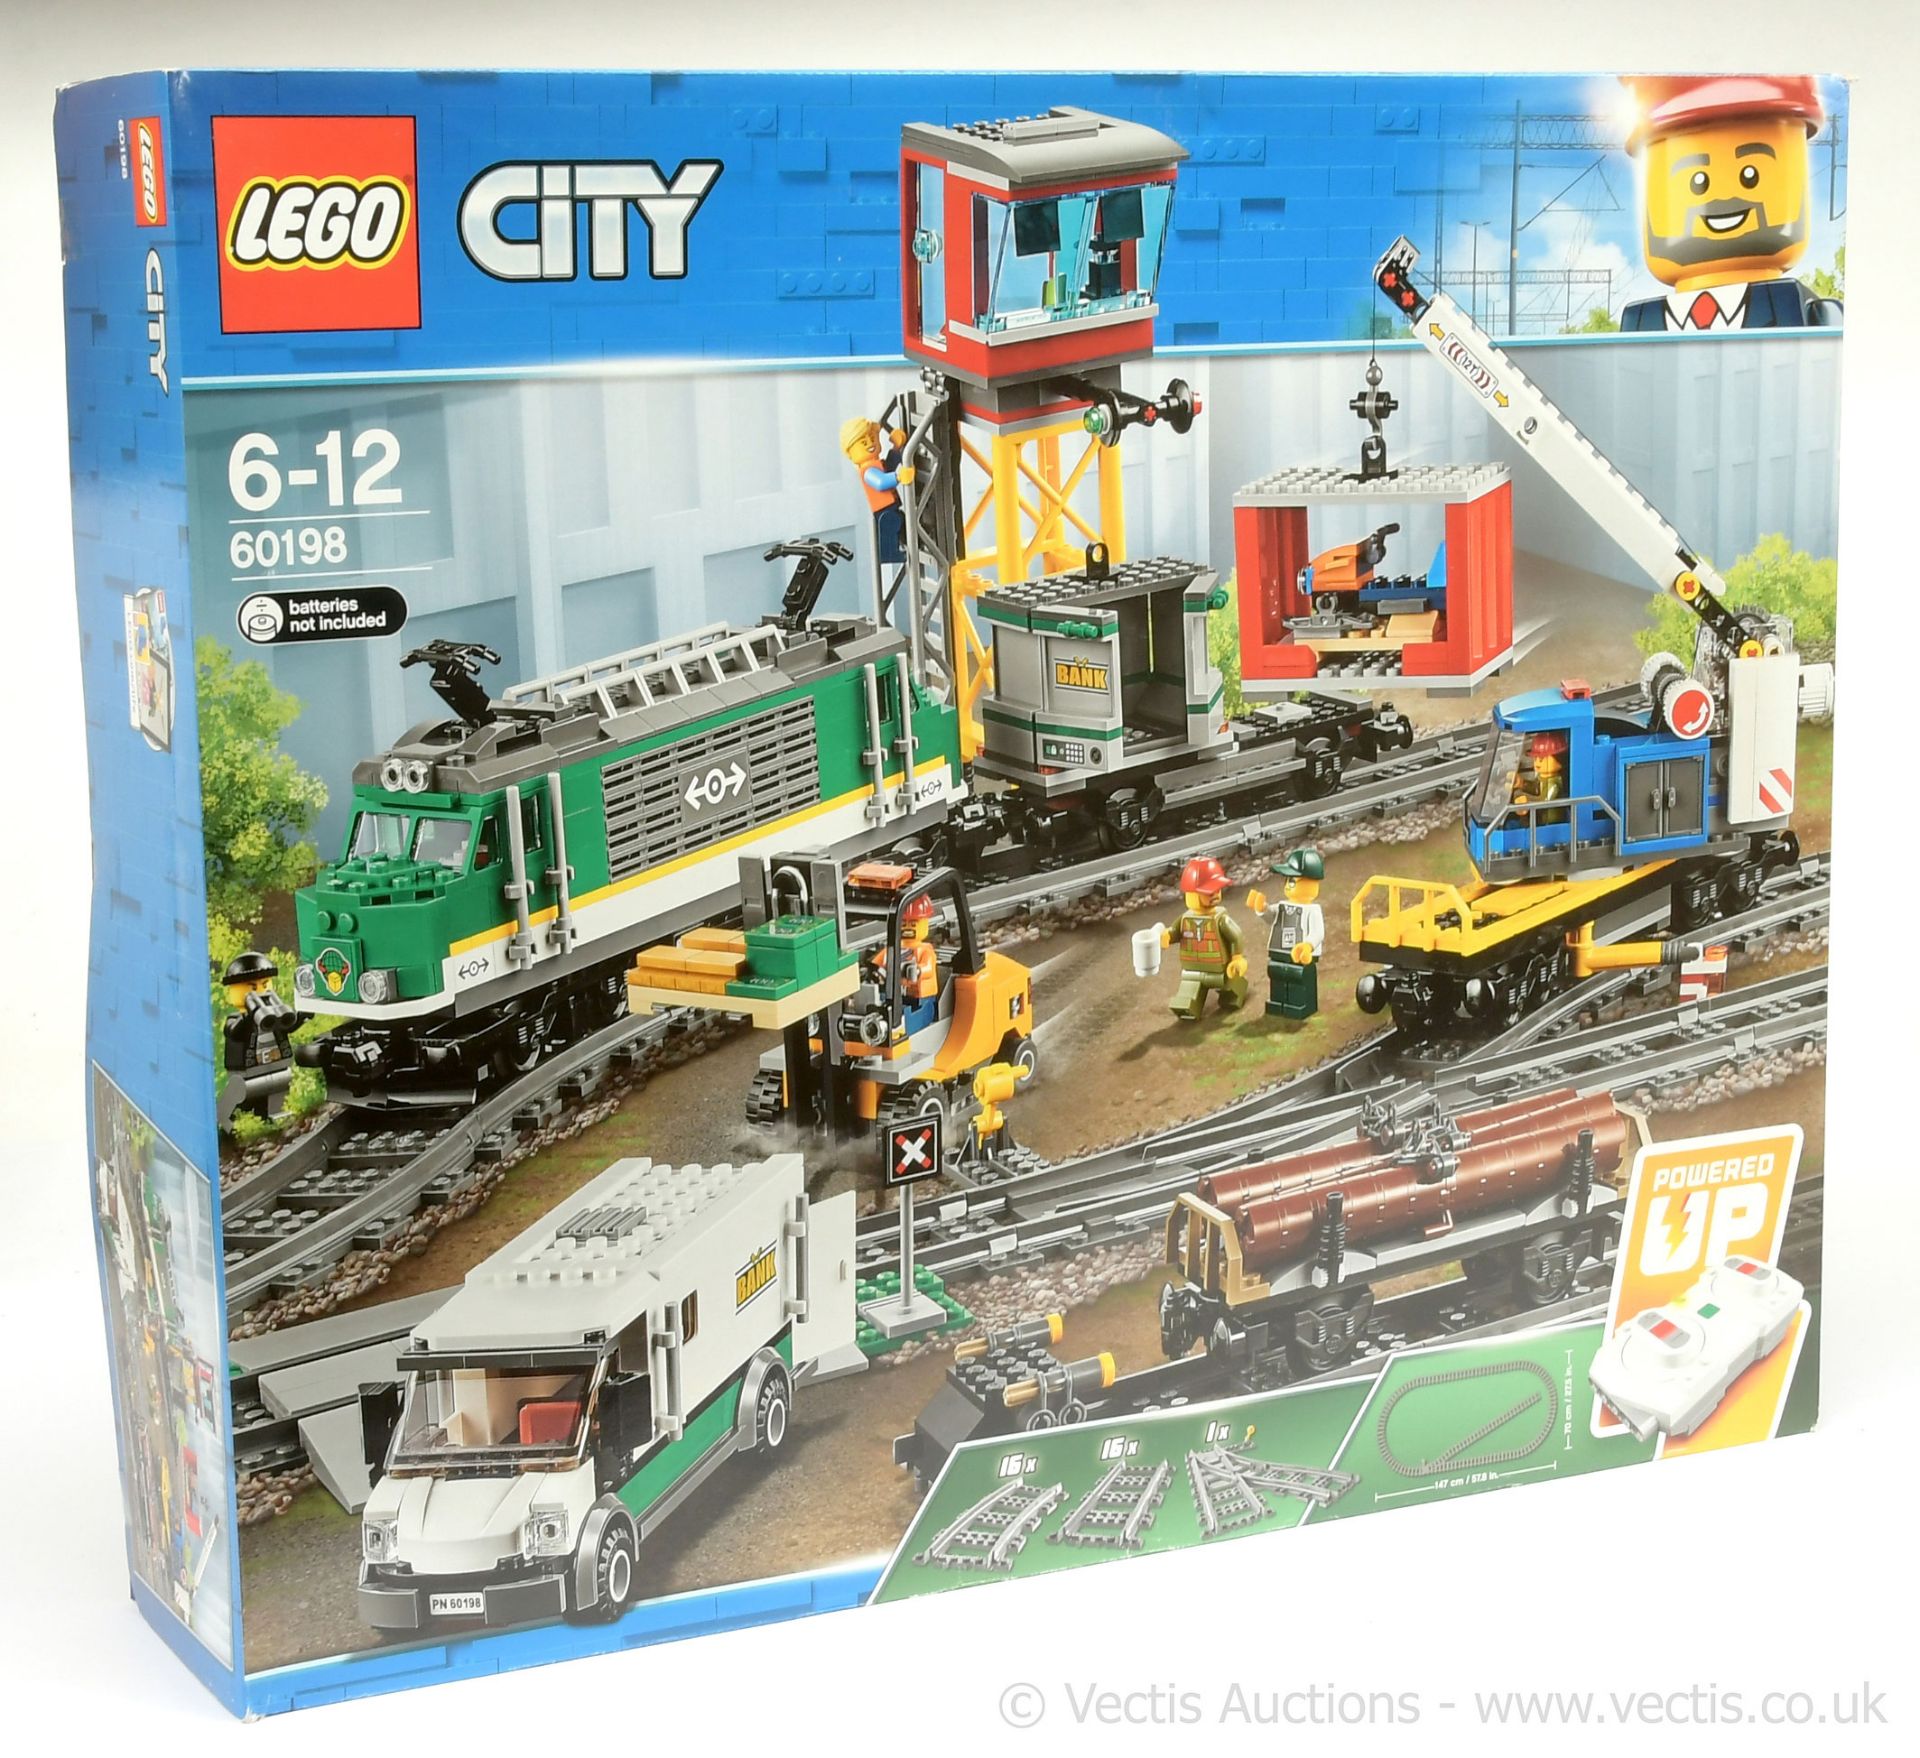 Lego City Cargo Train, set #60198, within